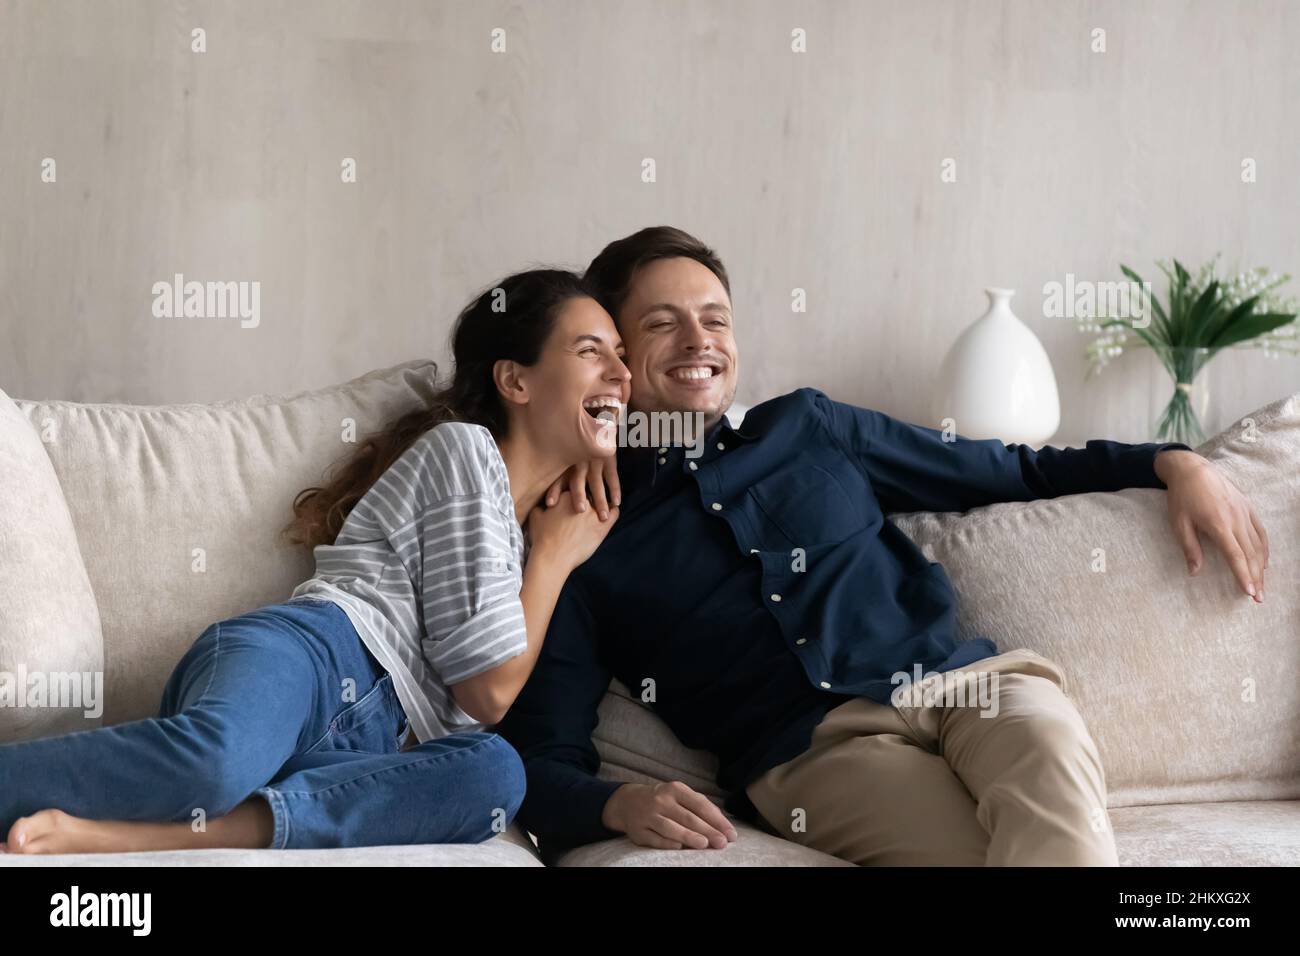 L'uomo e la donna sognanti eccitati abbracciano, sedendosi rilassandosi sul divano Foto Stock